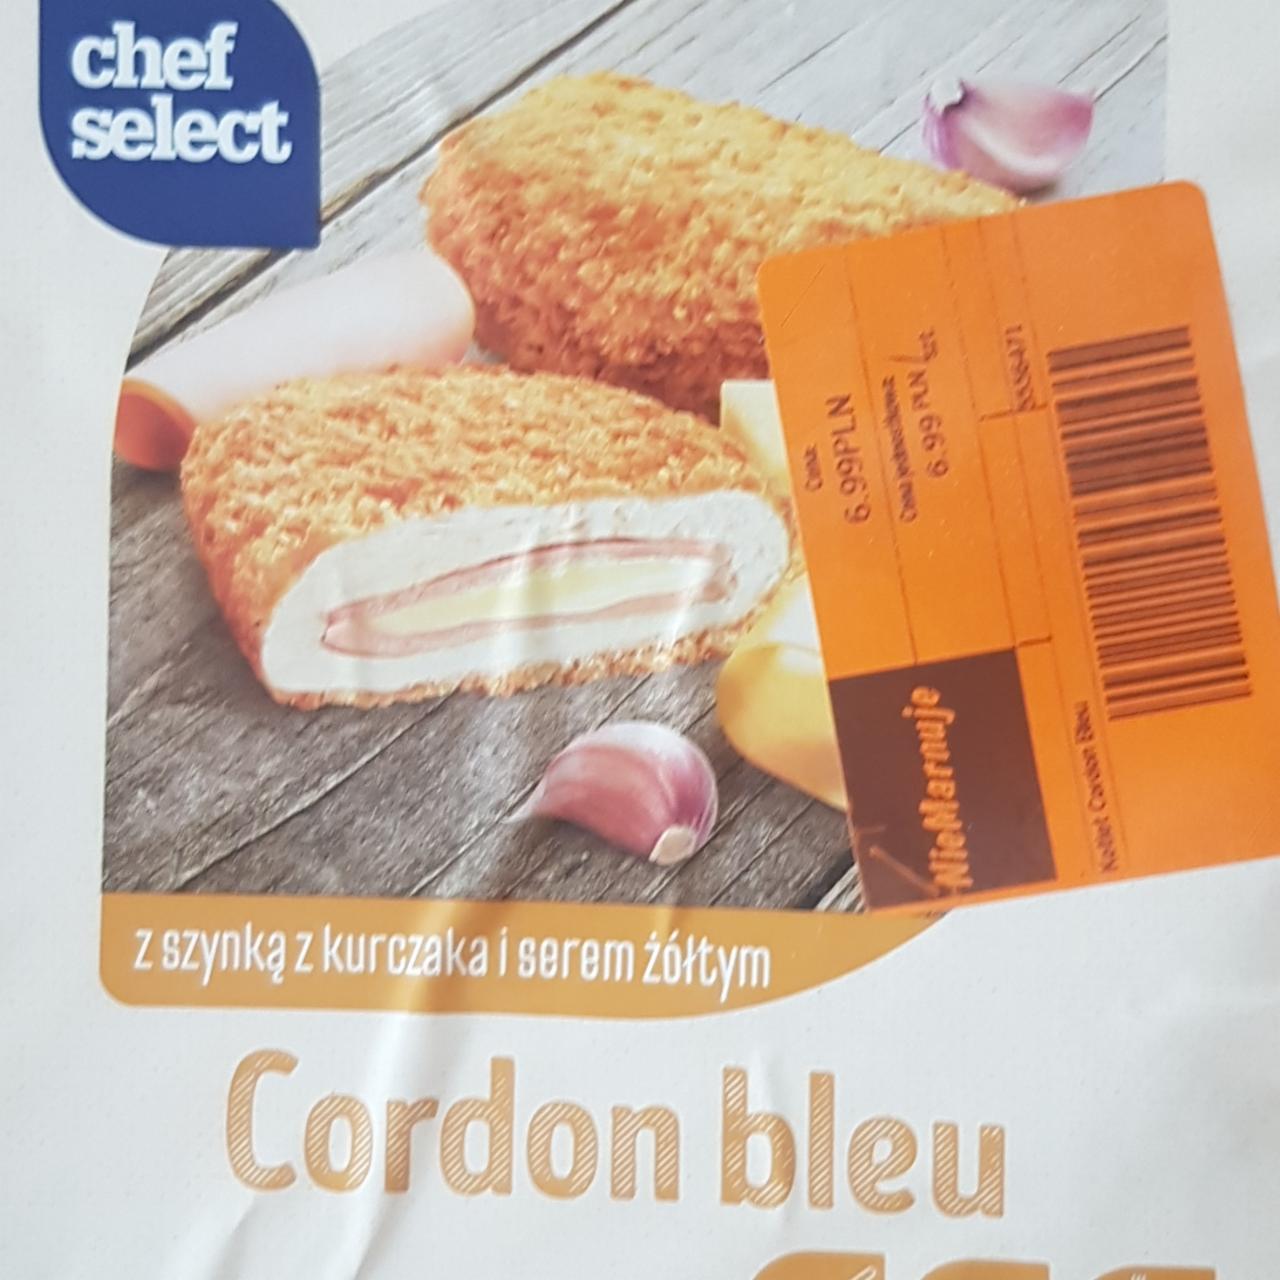 Zdjęcia - cordon bleu z szynką z kurczaka i serem żółtym Chef select